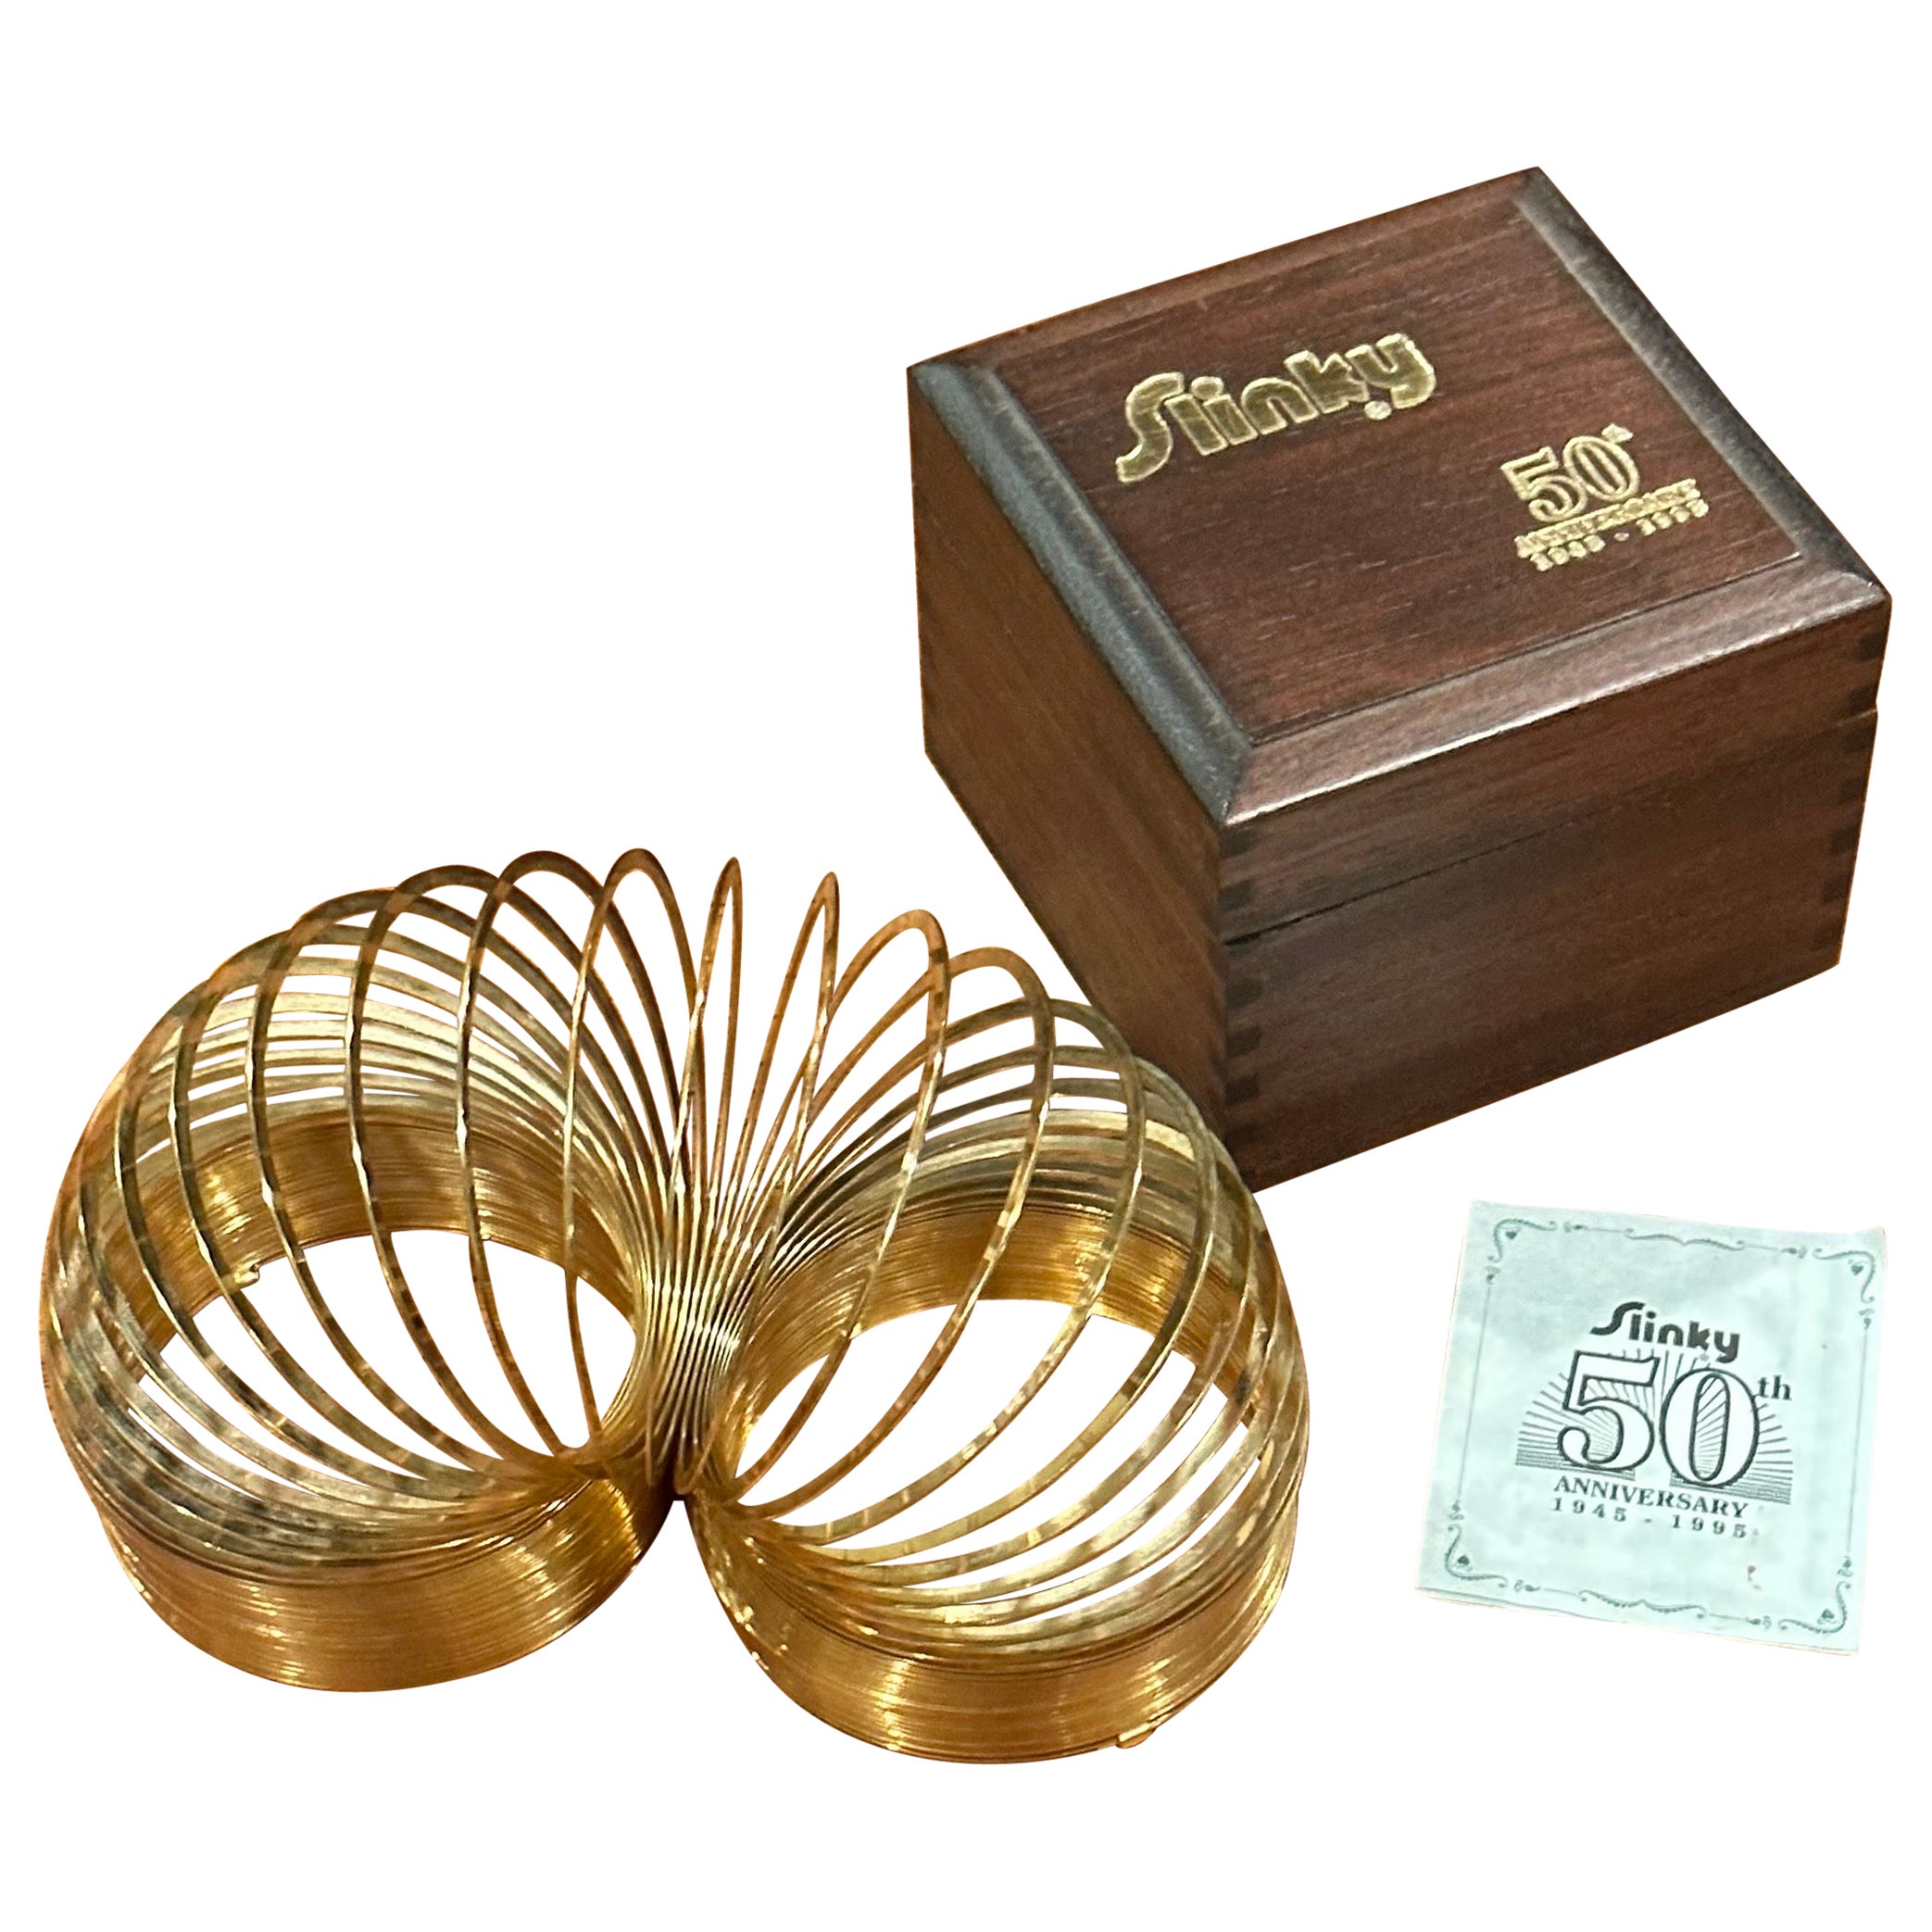 Vergoldetes Slinky-Spielzeug in Holzschachtel zum 50. Jahrestag